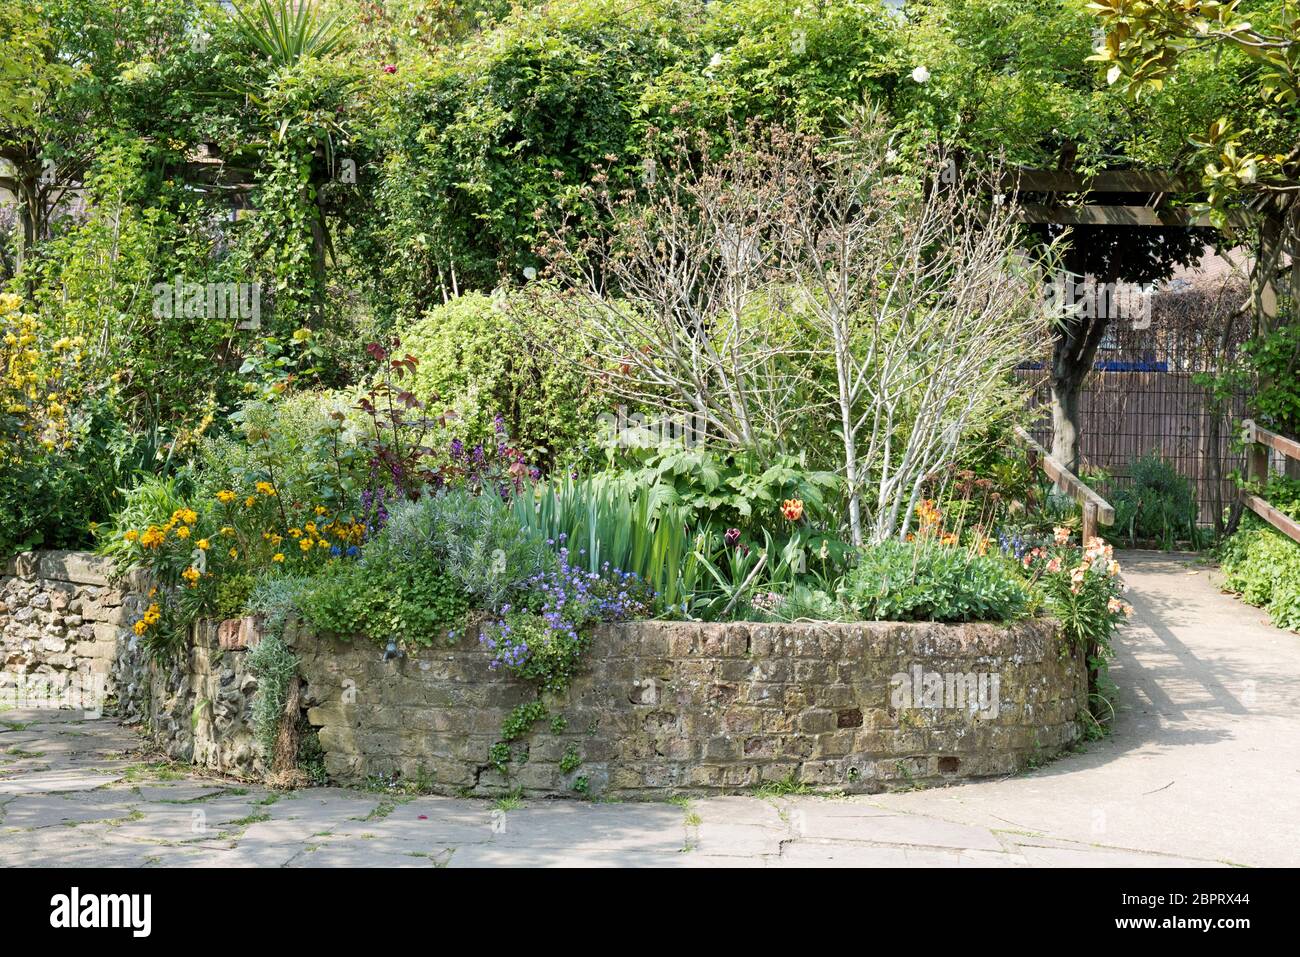 Lit de fleurs rehaussé avec support en briques incurvées, Culpeper Community Garden, un espace urbain ouvert dans le quartier d'Islington, Angleterre, Royaume-Uni Banque D'Images